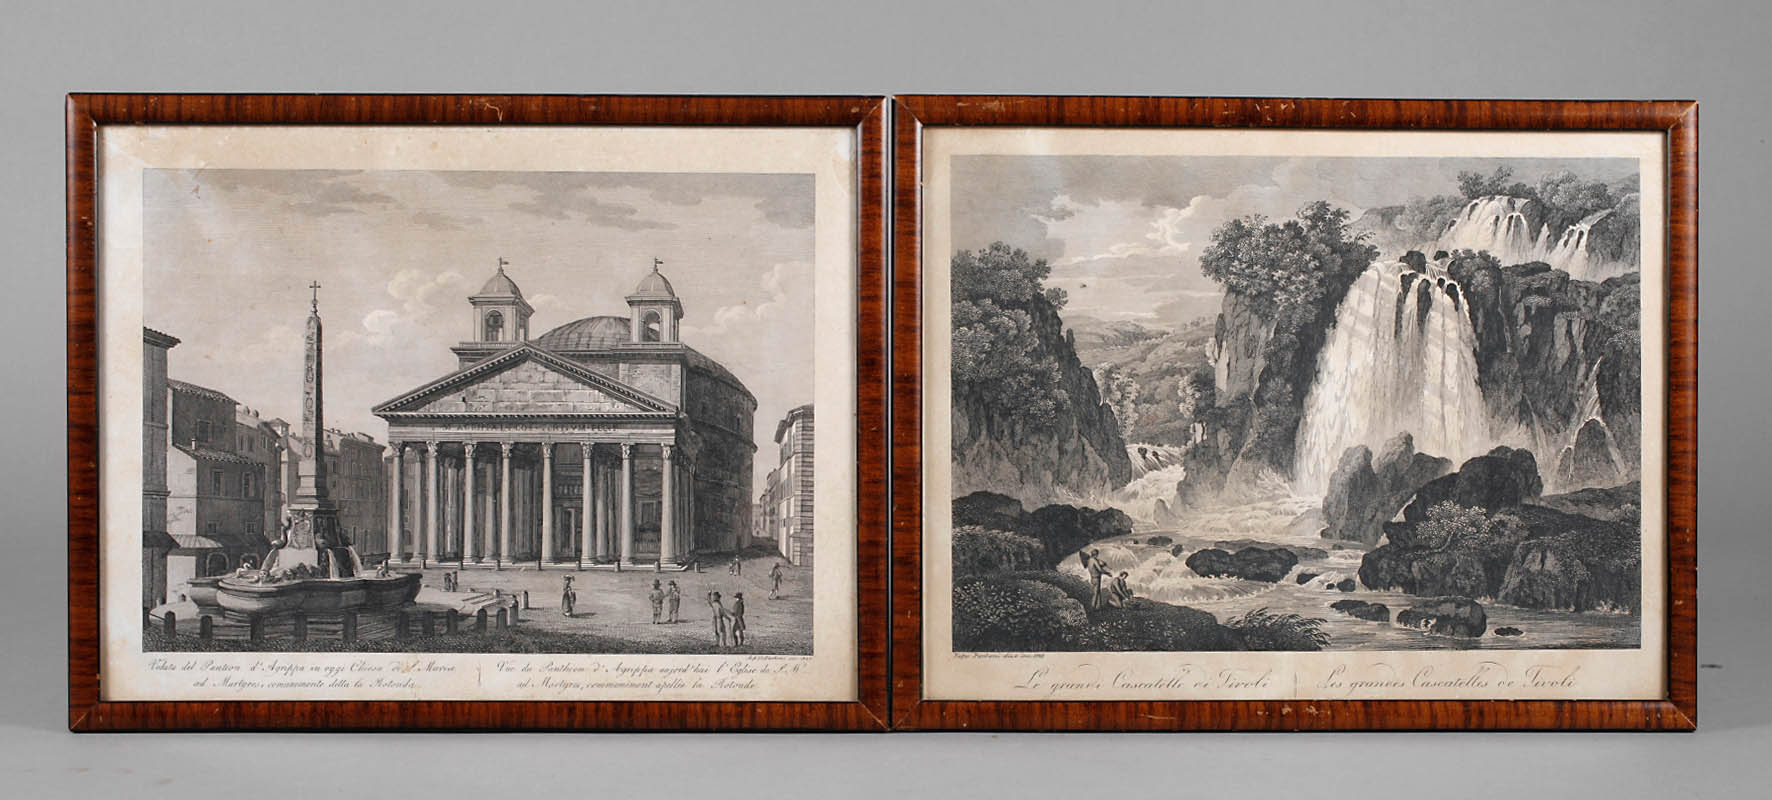 Achille und Pietro Parboni, Pantheon in Rom und Tivoli